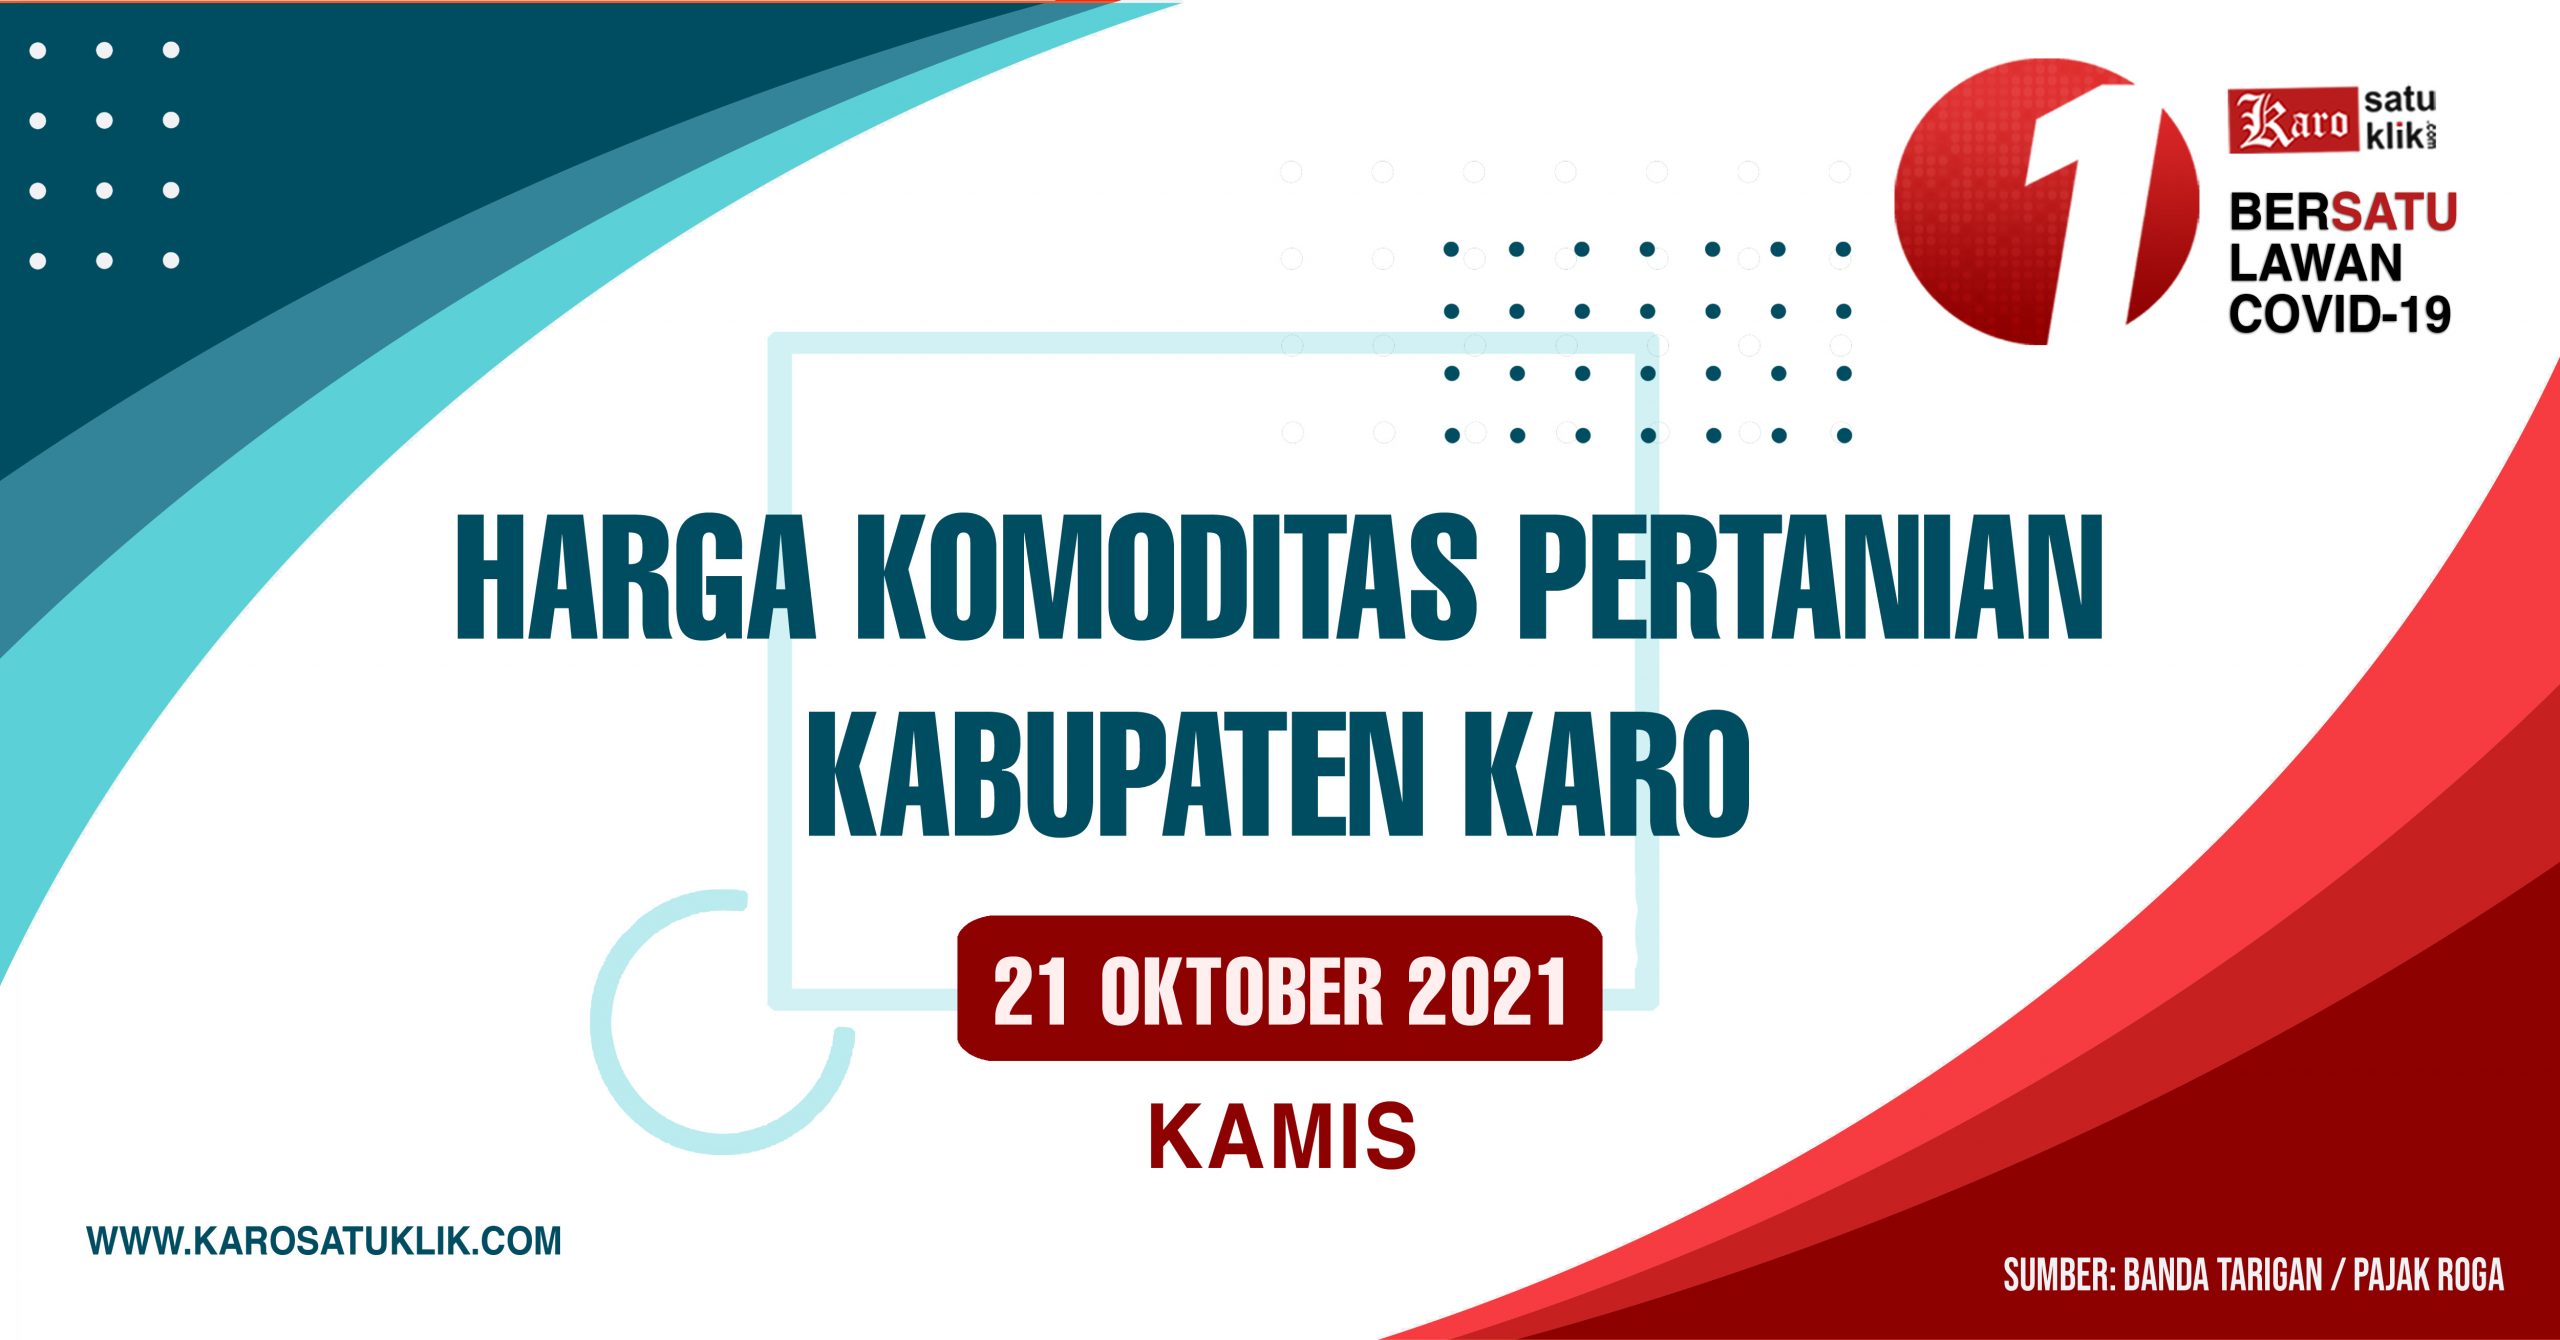 Daftar Harga Komoditas Pertanian Kabupaten Karo, 21 Oktober 2021